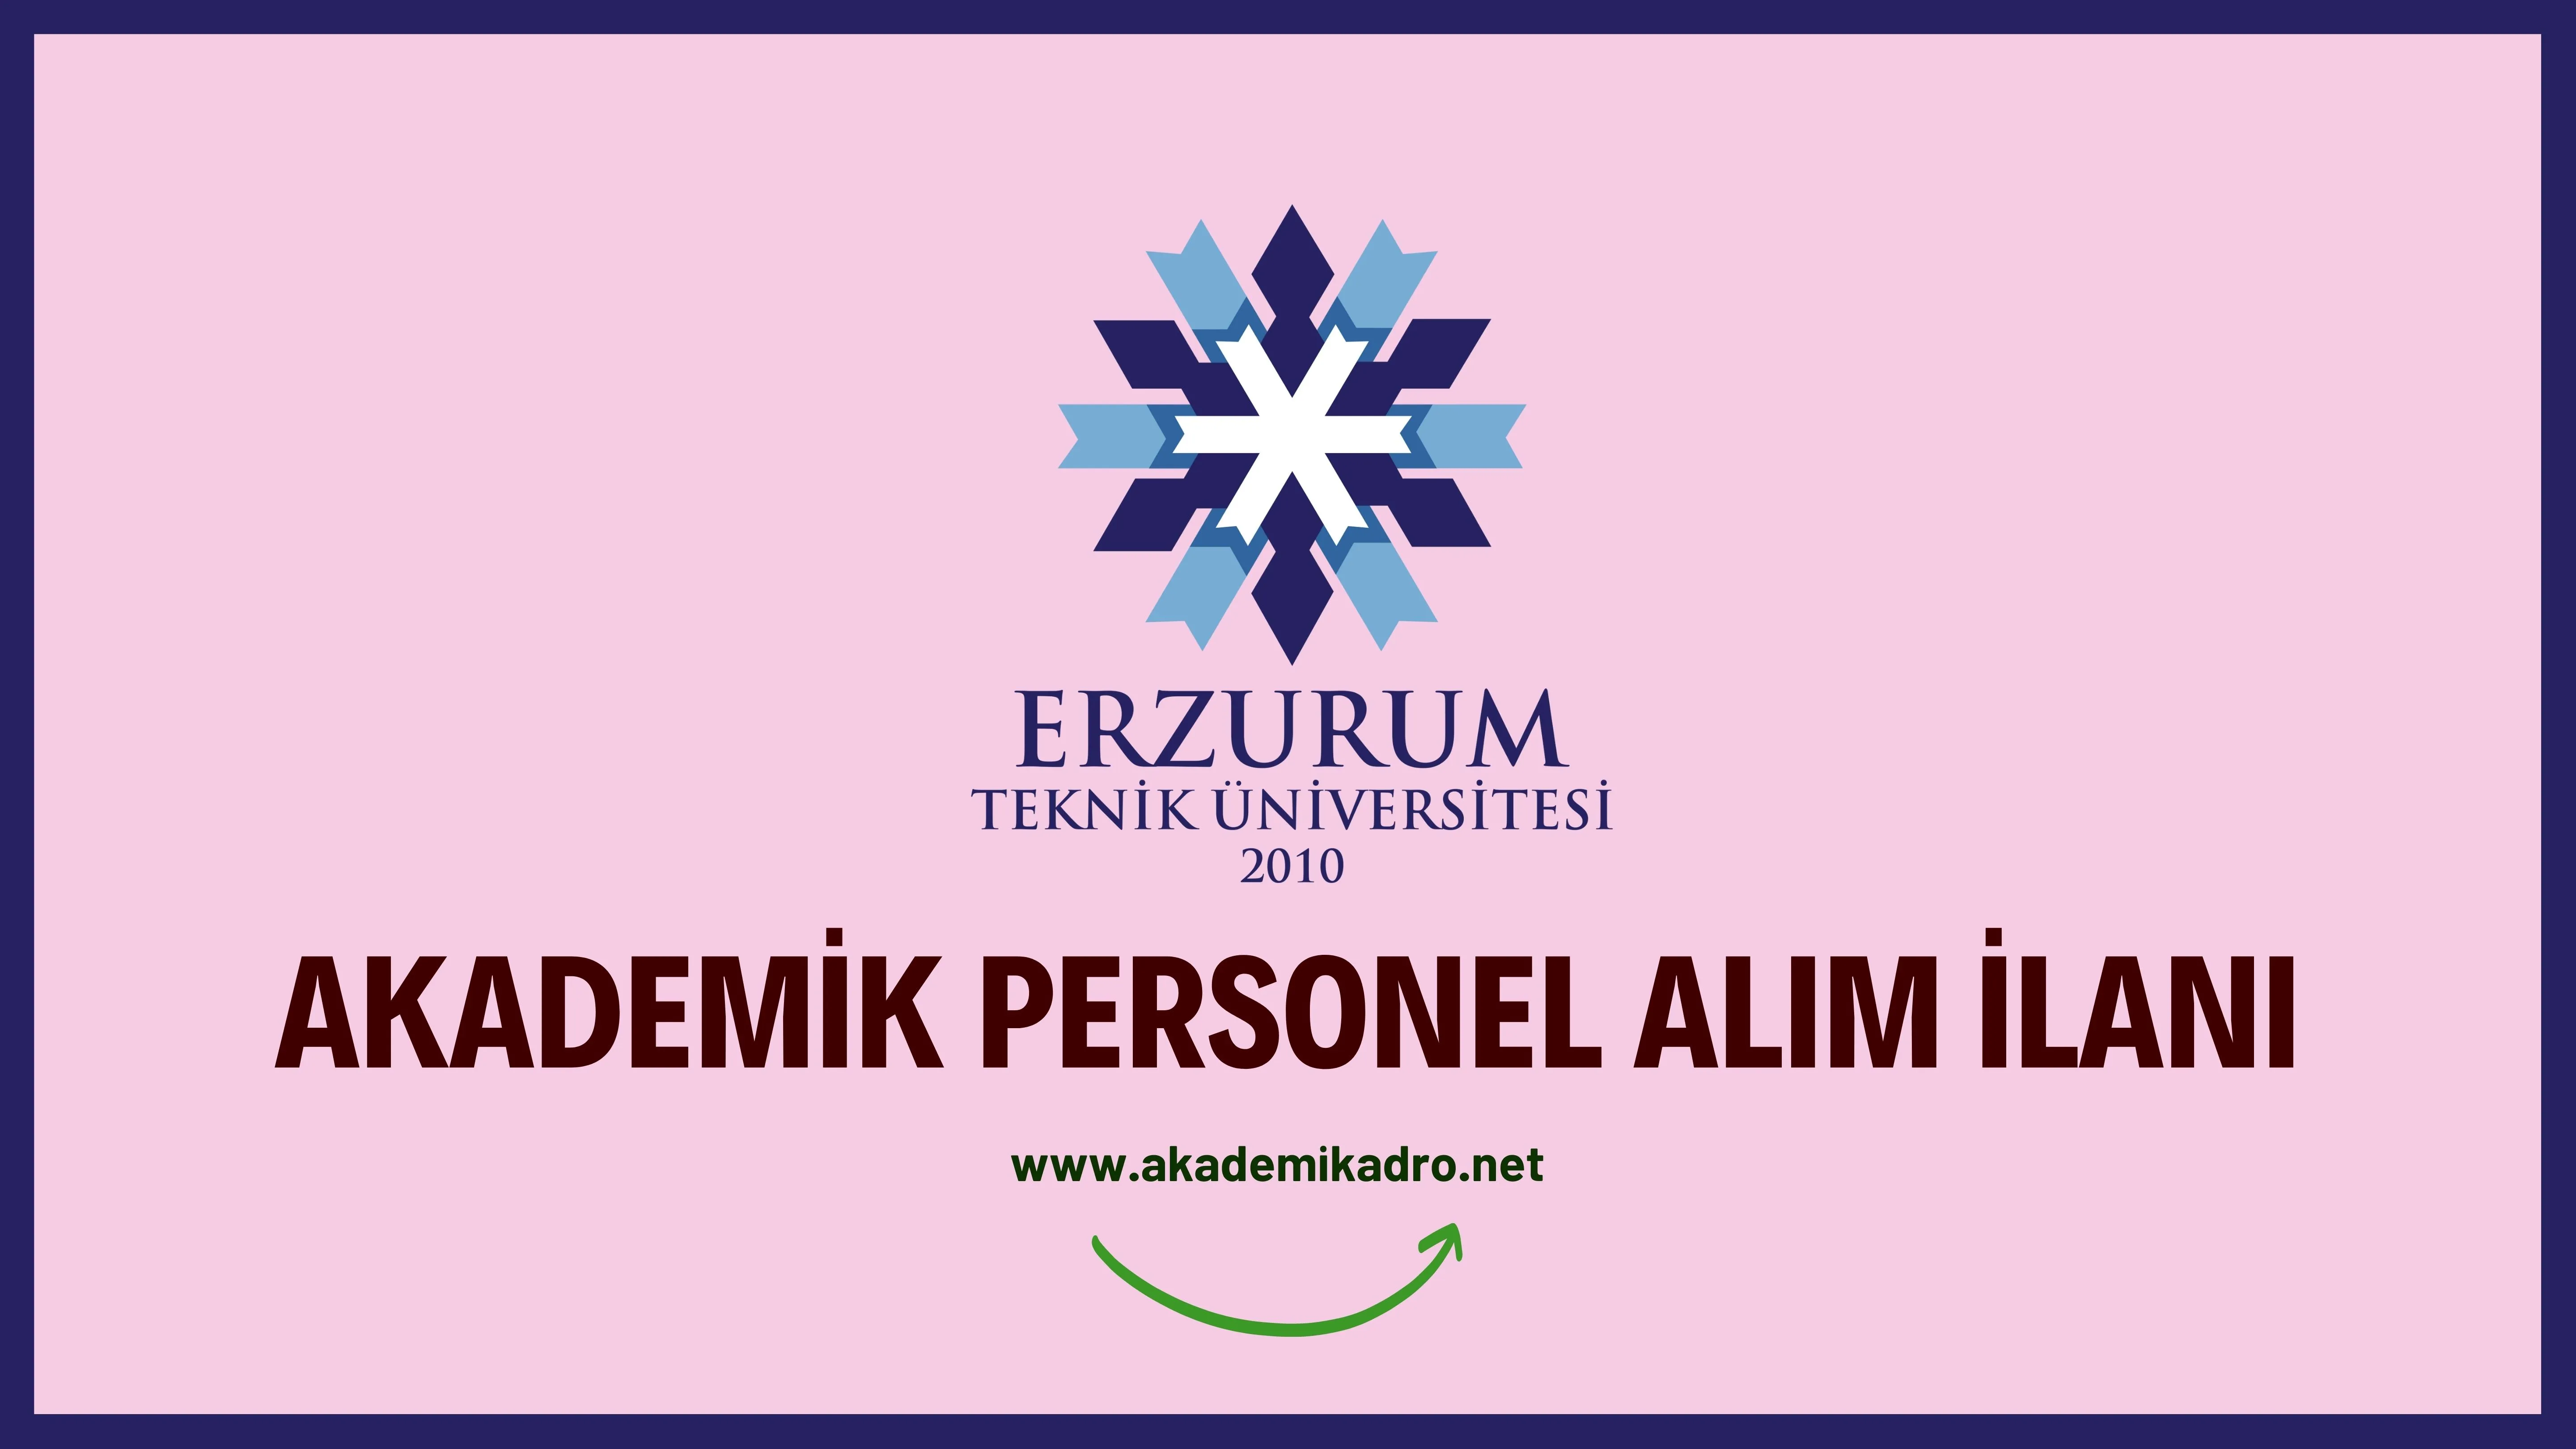 Erzurum Teknik Üniversitesi 8 akademik personel alacaktır.